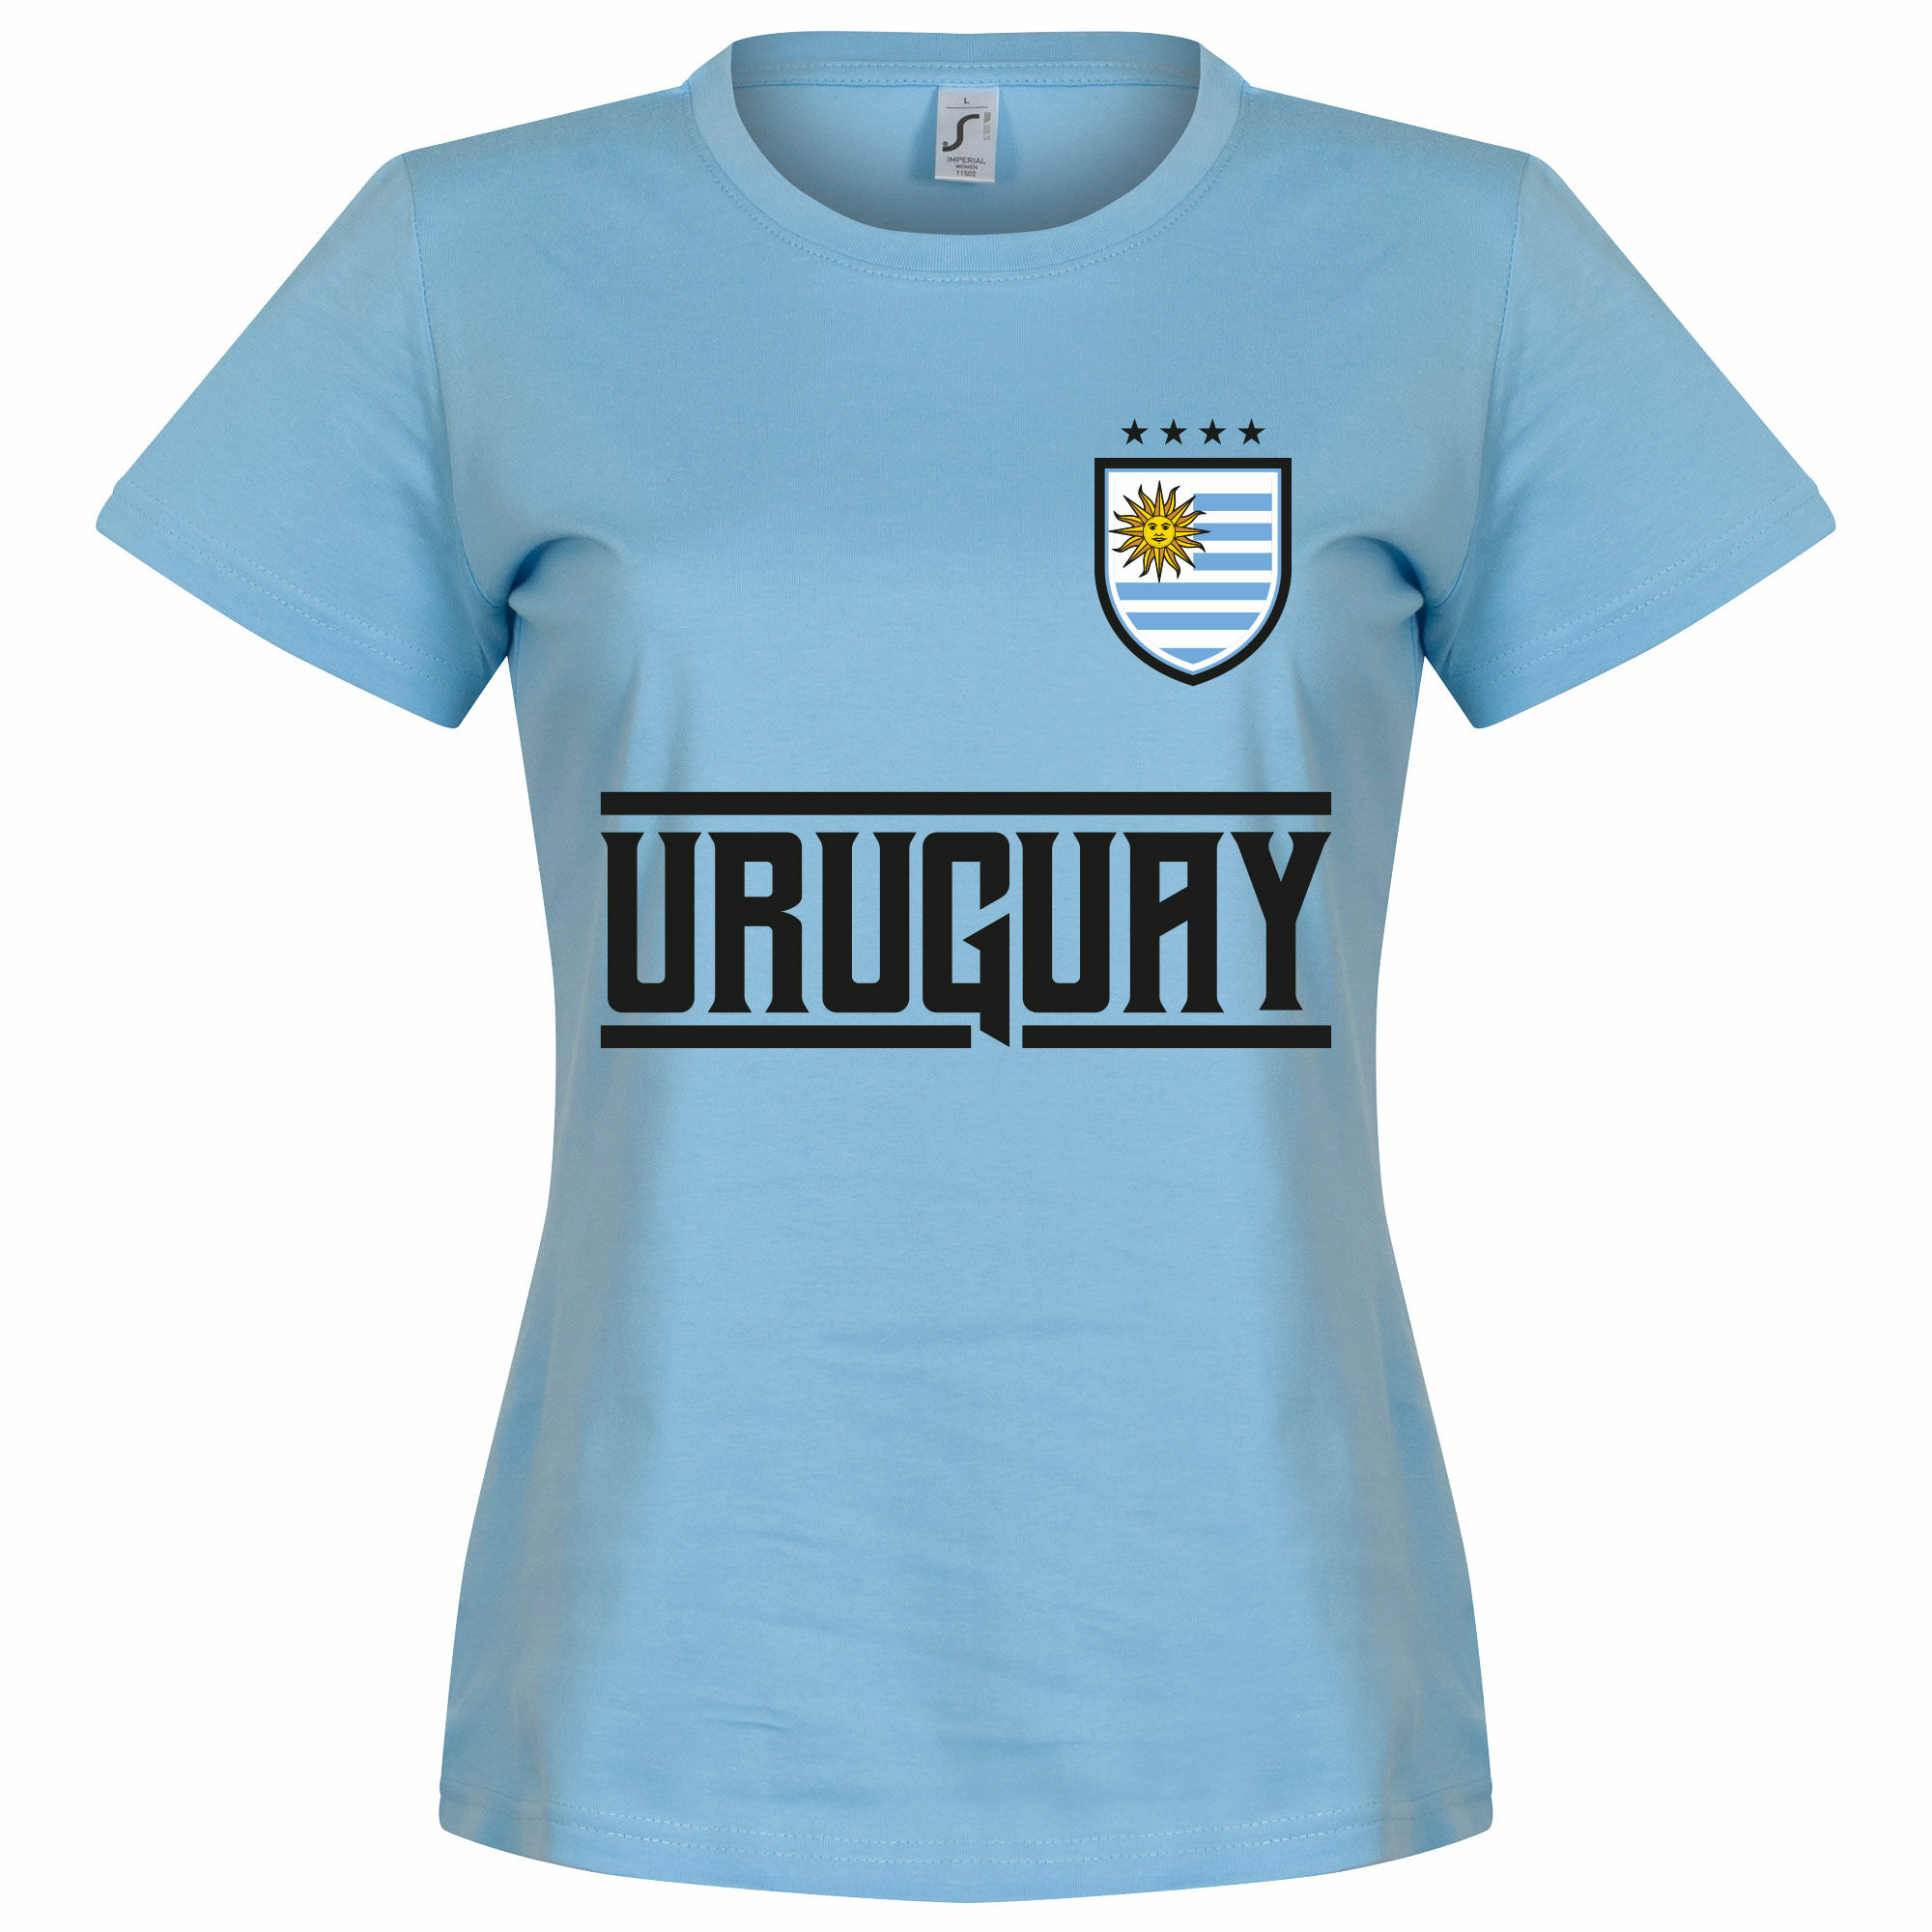 Uruguay - Tričko dámské - modré